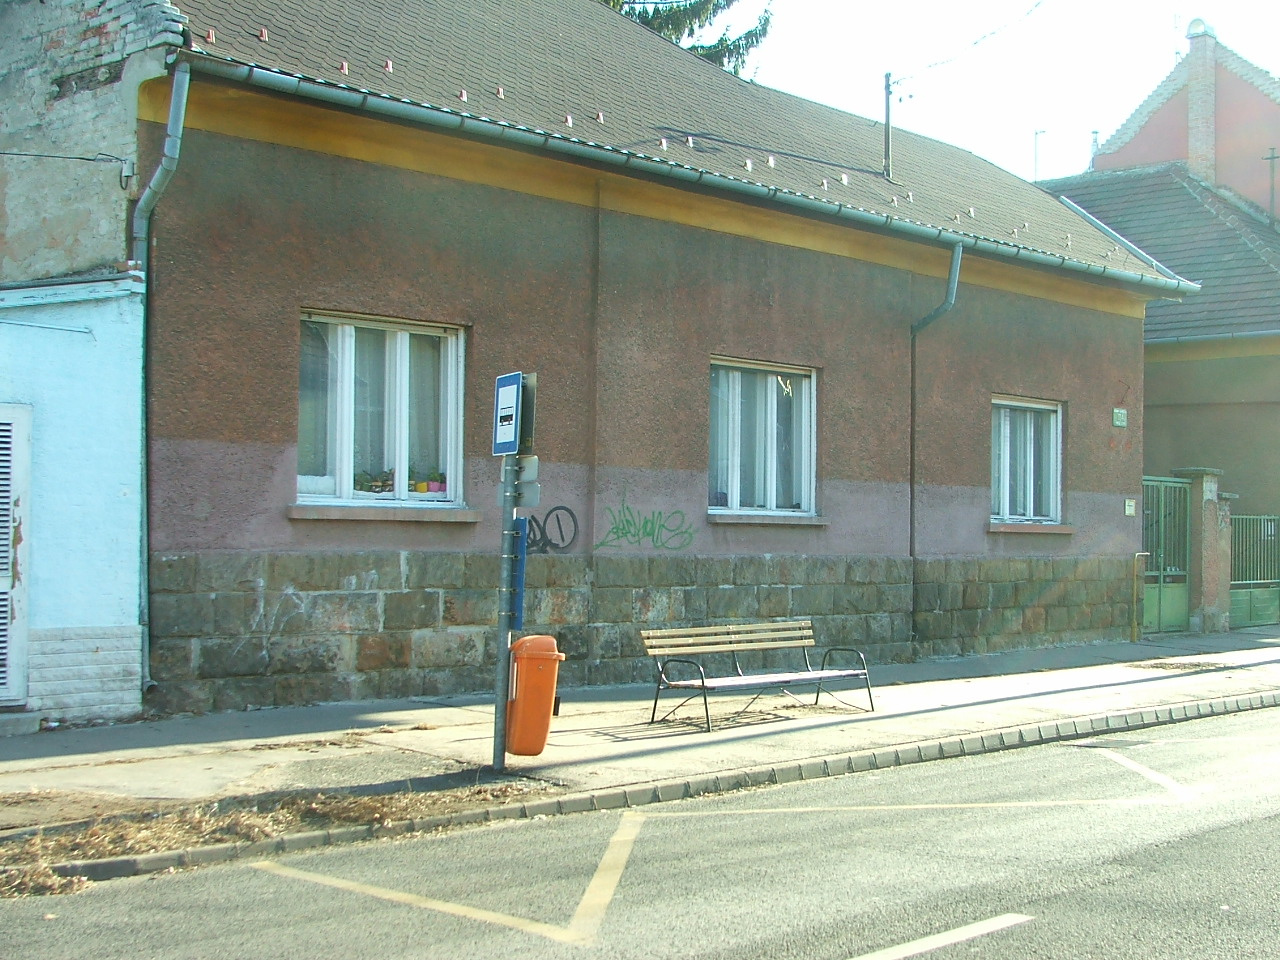 1193. Derkovits Gyula utca 72